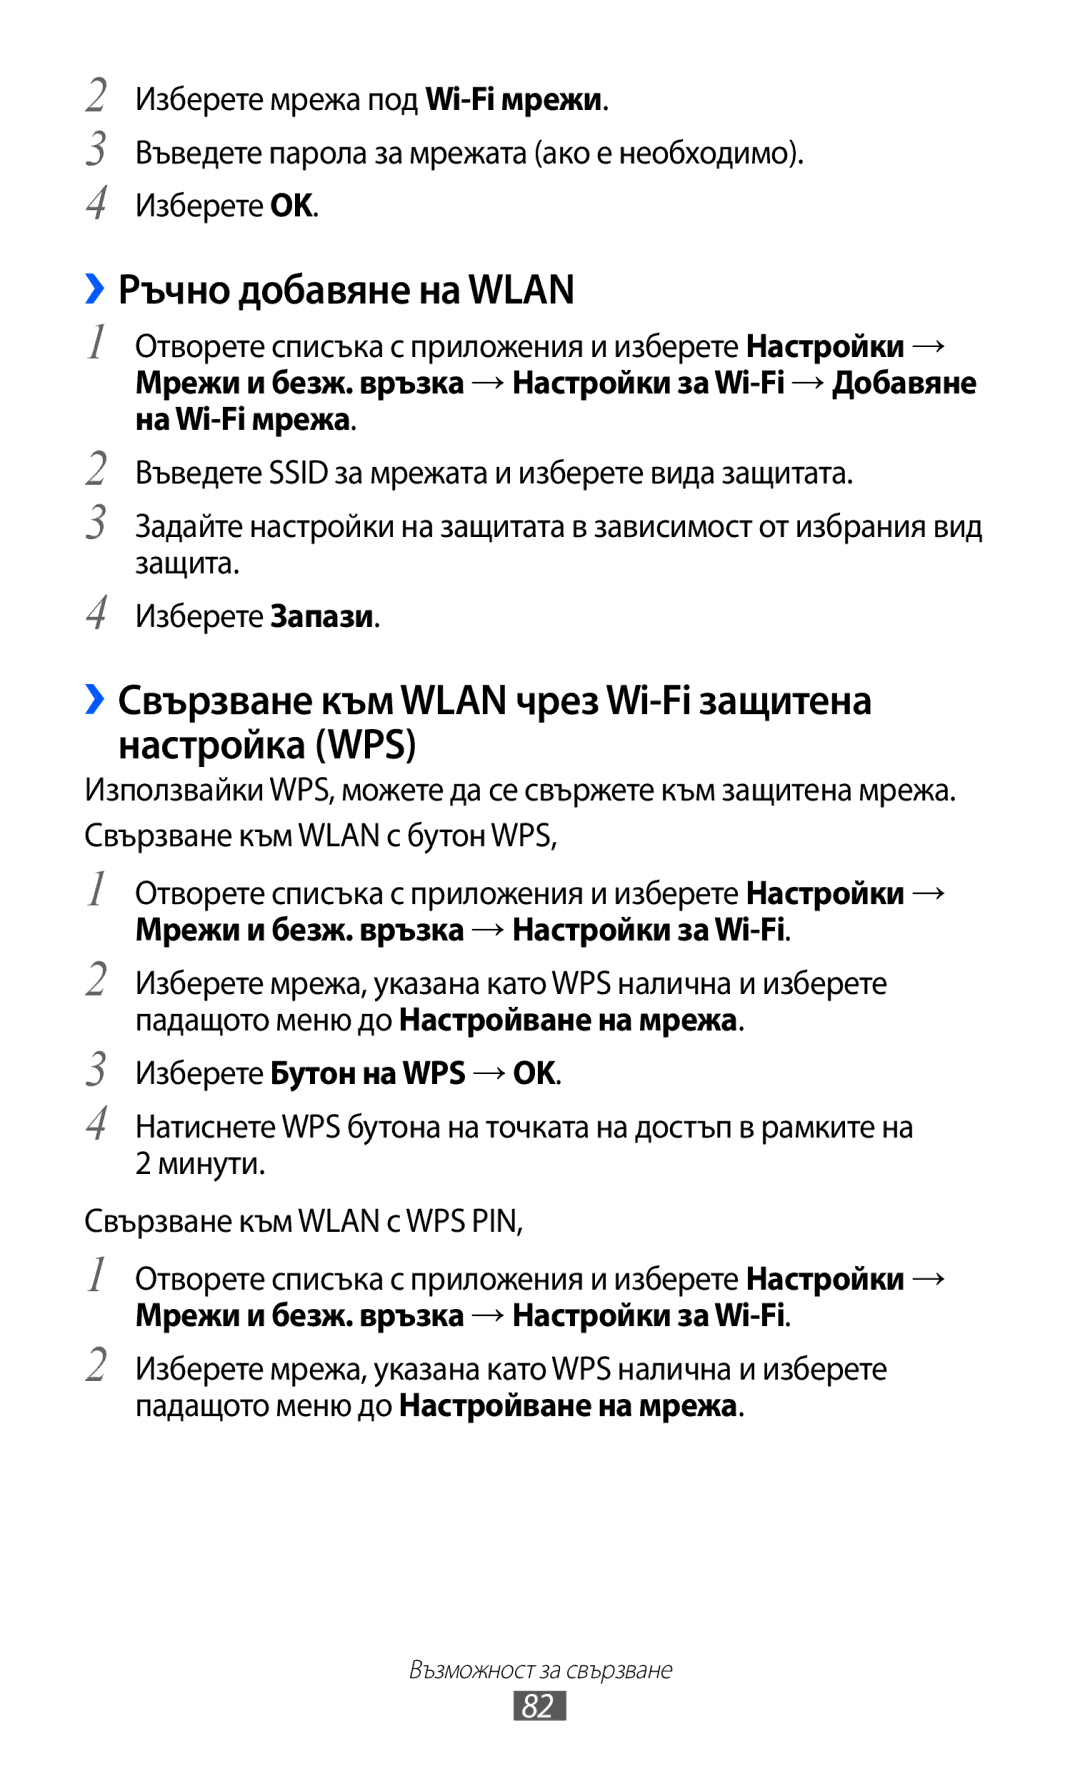 Samsung GT-P6210UWABGL manual ››Ръчно добавяне на Wlan, ››Свързване към Wlan чрез Wi-Fi защитена настройка WPS 